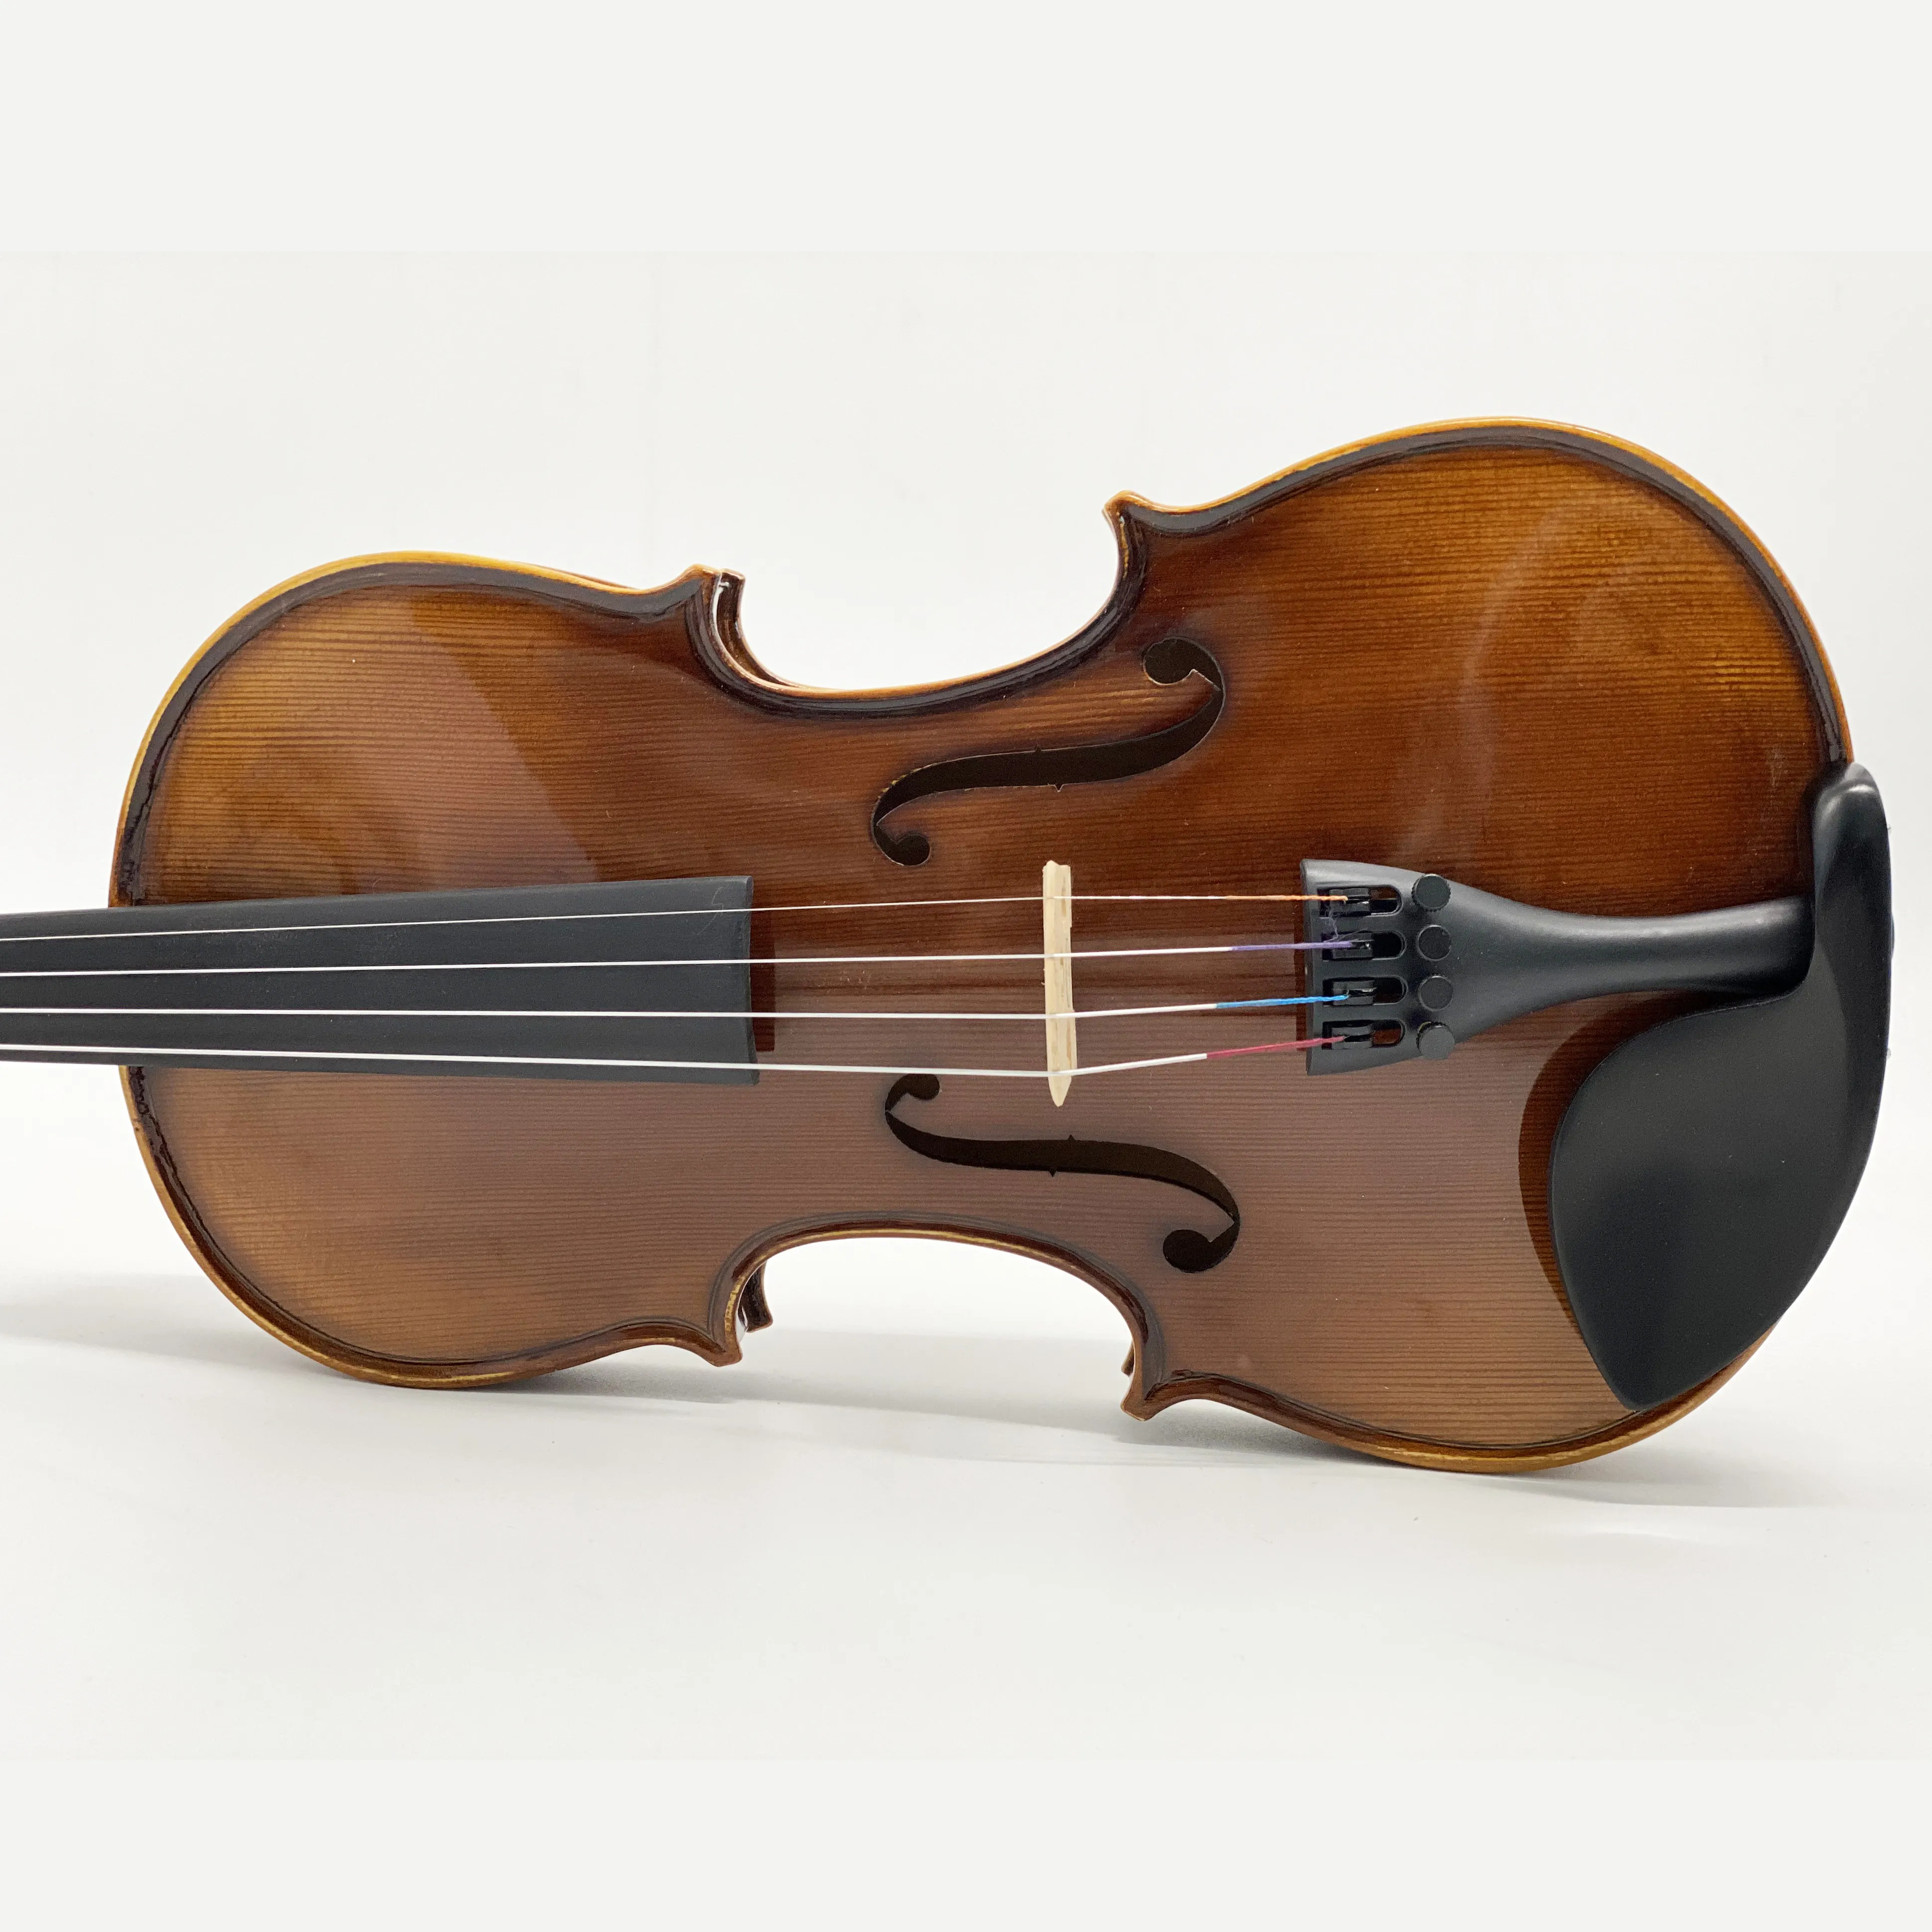 Cordas instrumentos musicais artesanais alemão chama violino